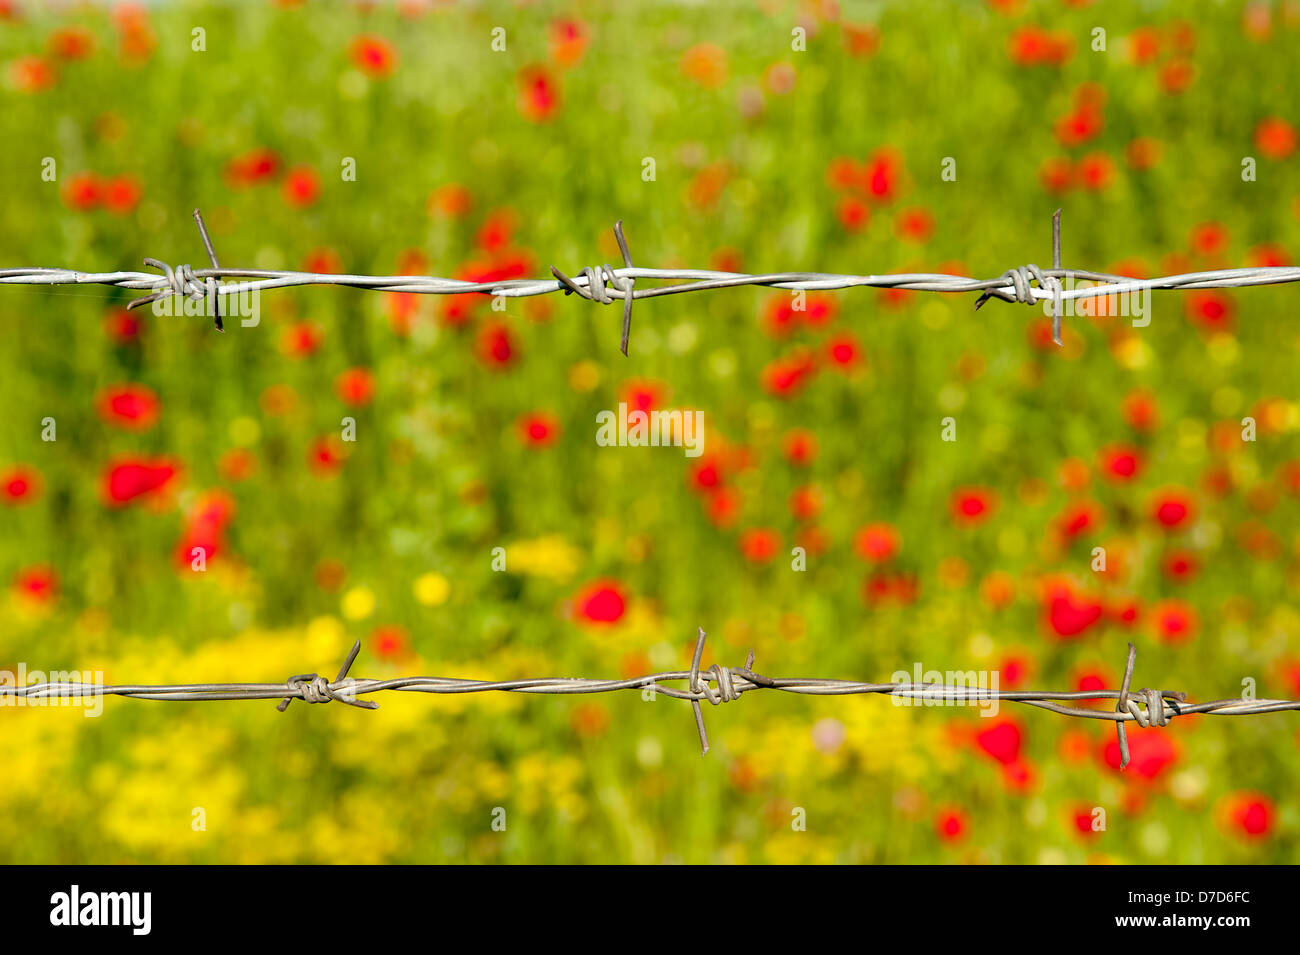 Stacheldraht auf bunte rote Mohnblumen Feld Stockfoto